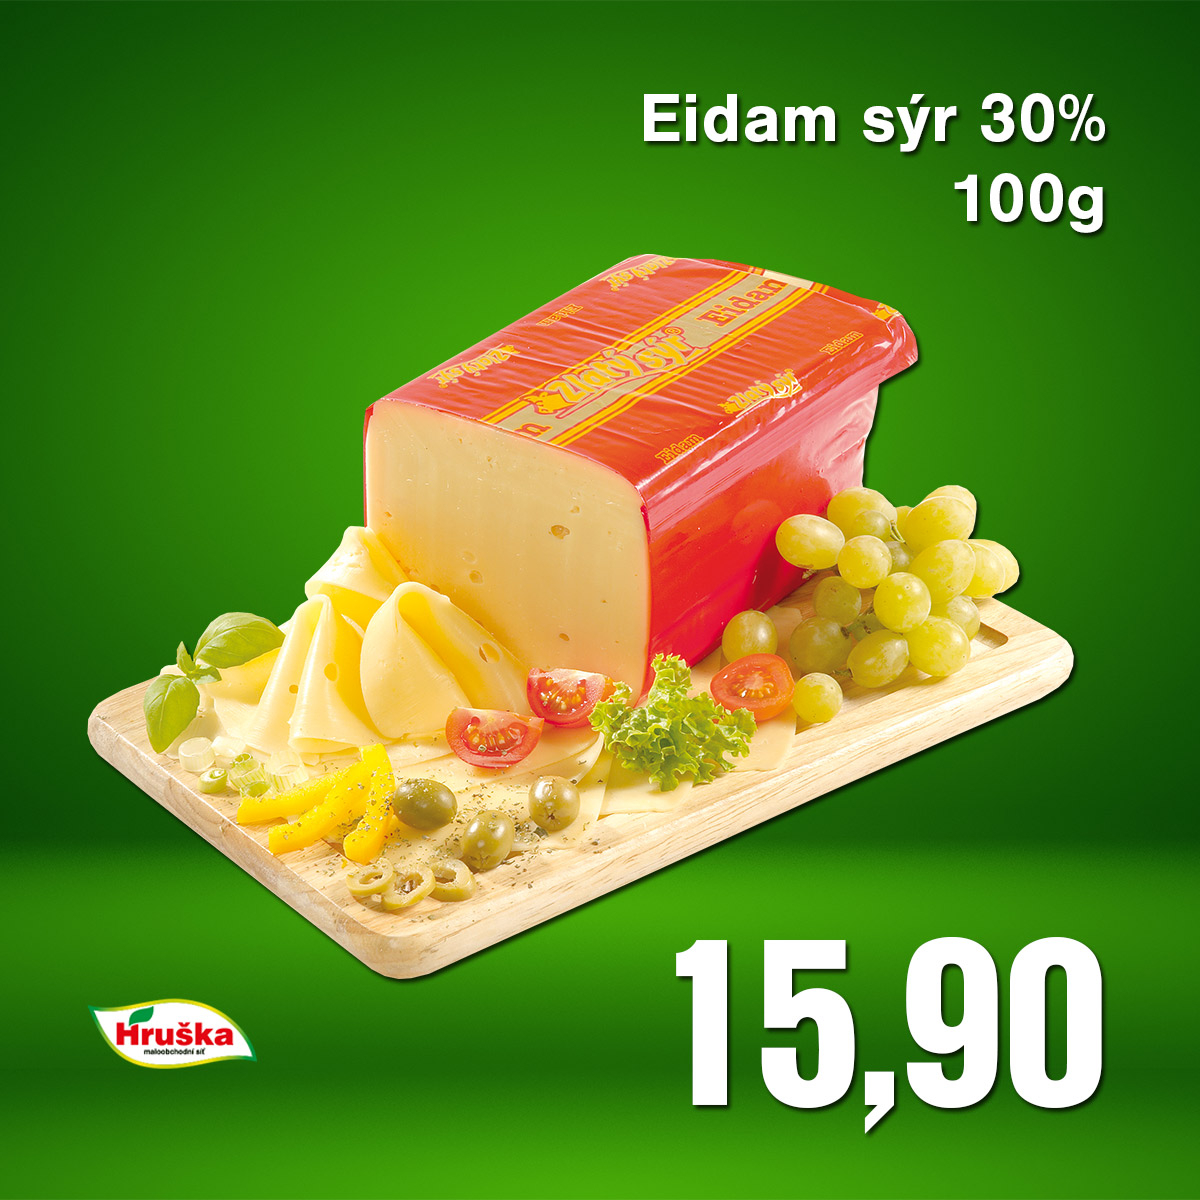 Eidam sýr 30% 100g